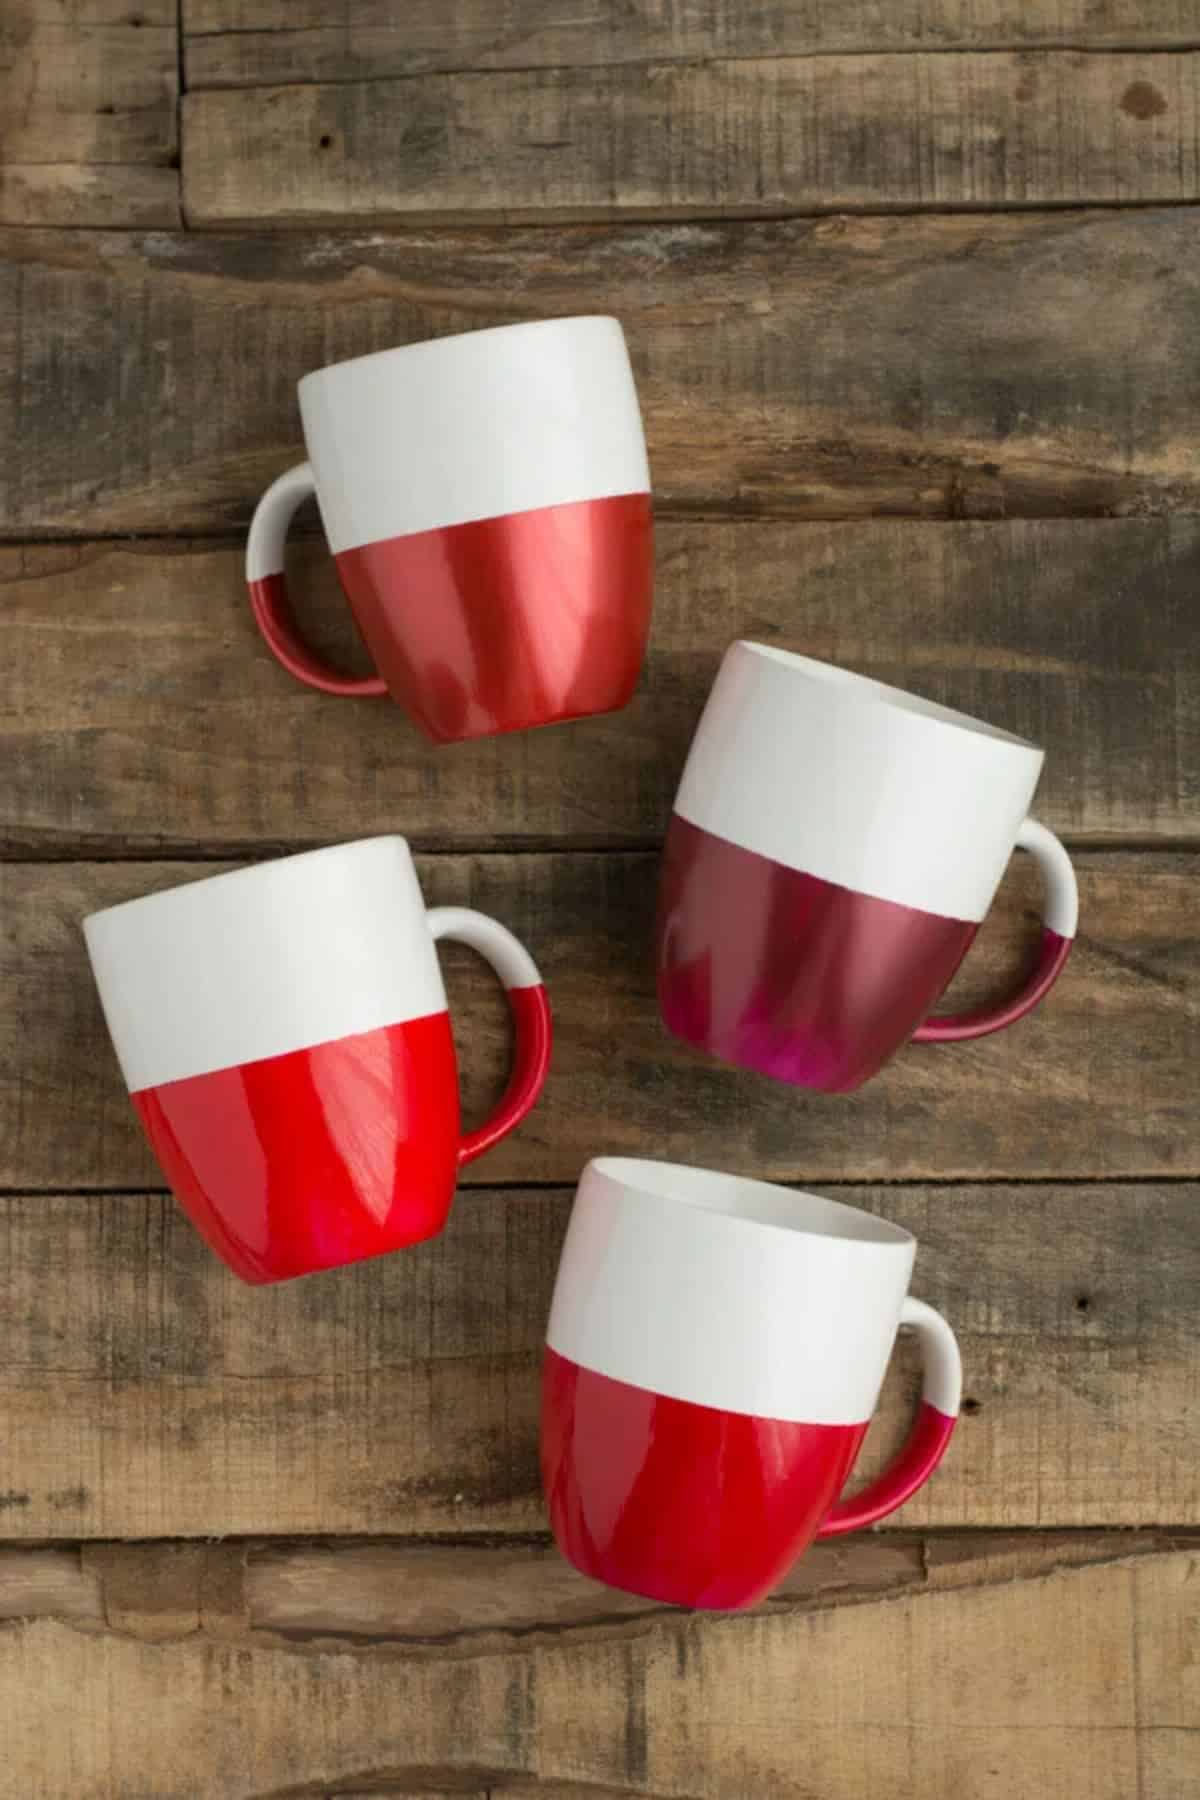 DIY Two-Toned Mugs